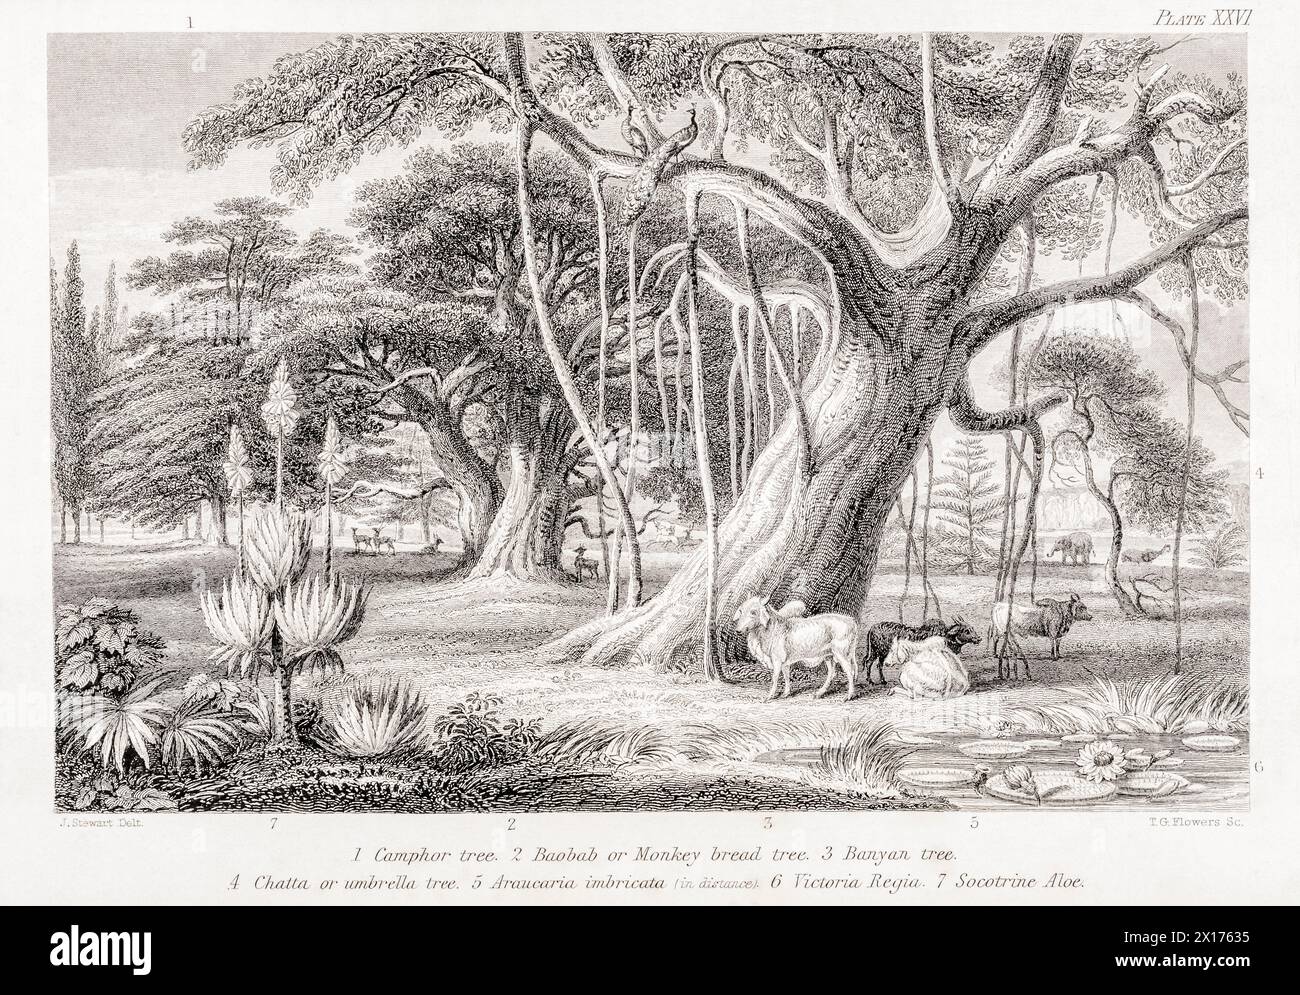 1872 foto botanica vittoriana in William Rhind: Banyan & Boabab Trees. Mostra albero Camphor, albero ombrello, Araucaria, Victoria regia, Socotrine Aloe Foto Stock